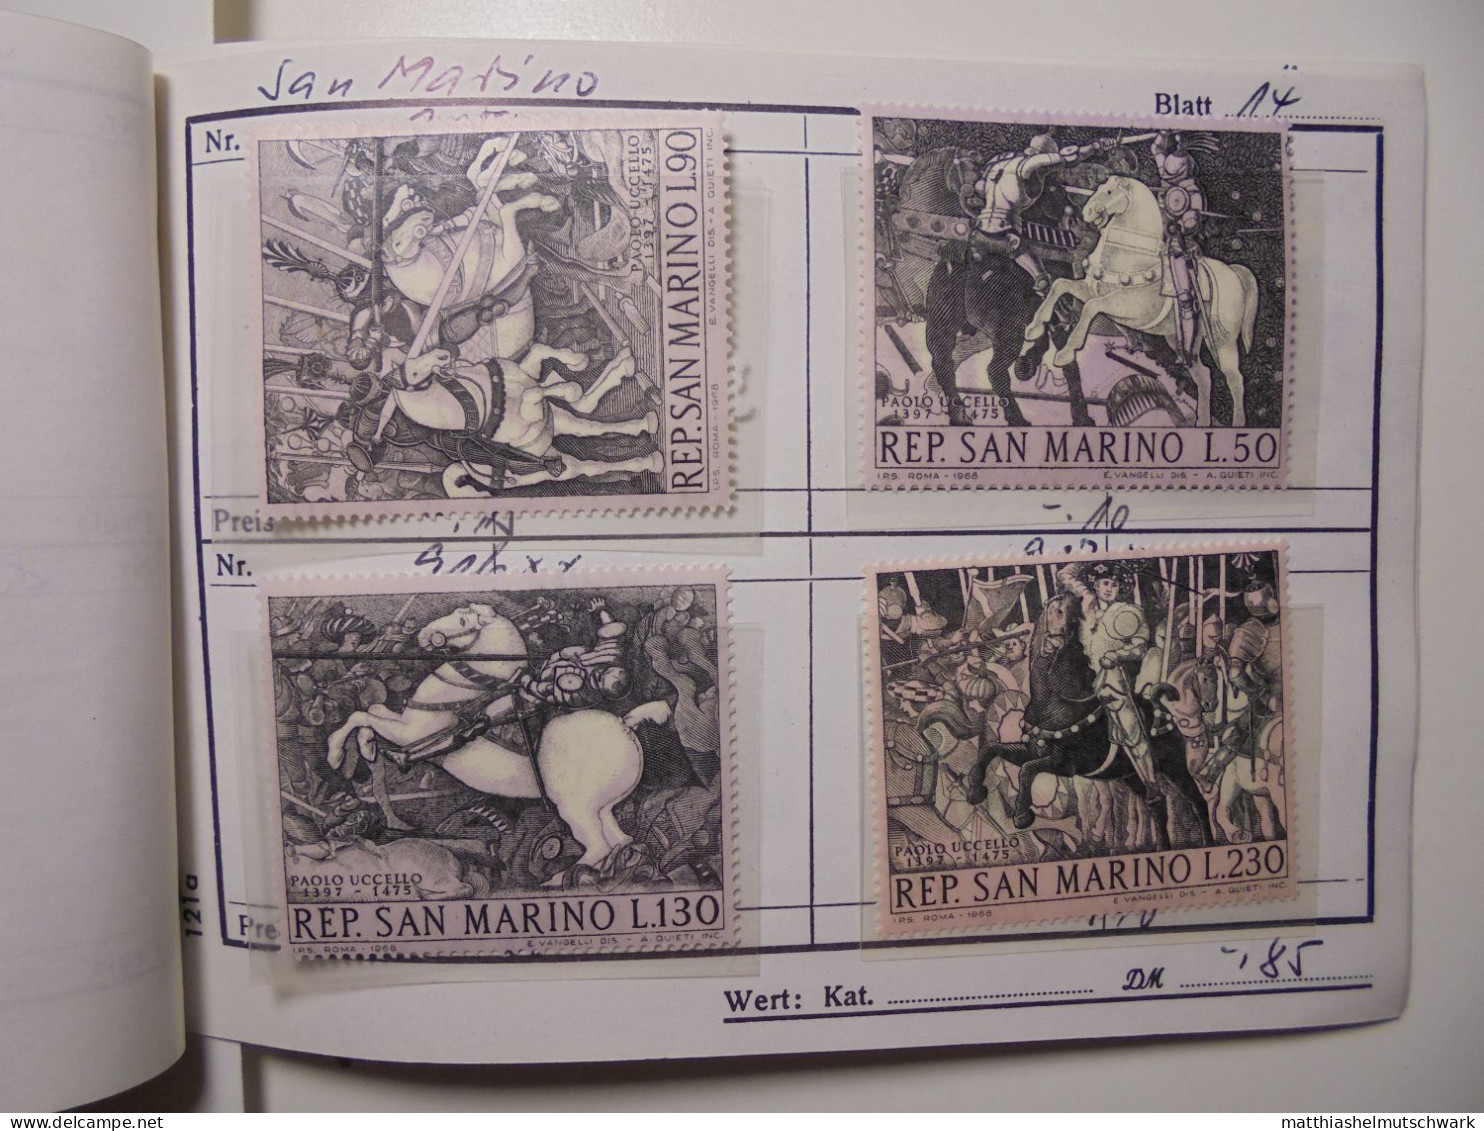 Auswahlheft Nr. 964 10 Blätter 66 Briefmarken xx San Marino 1947-1957/Mi Nr. 380-569, unvollständig Ca.